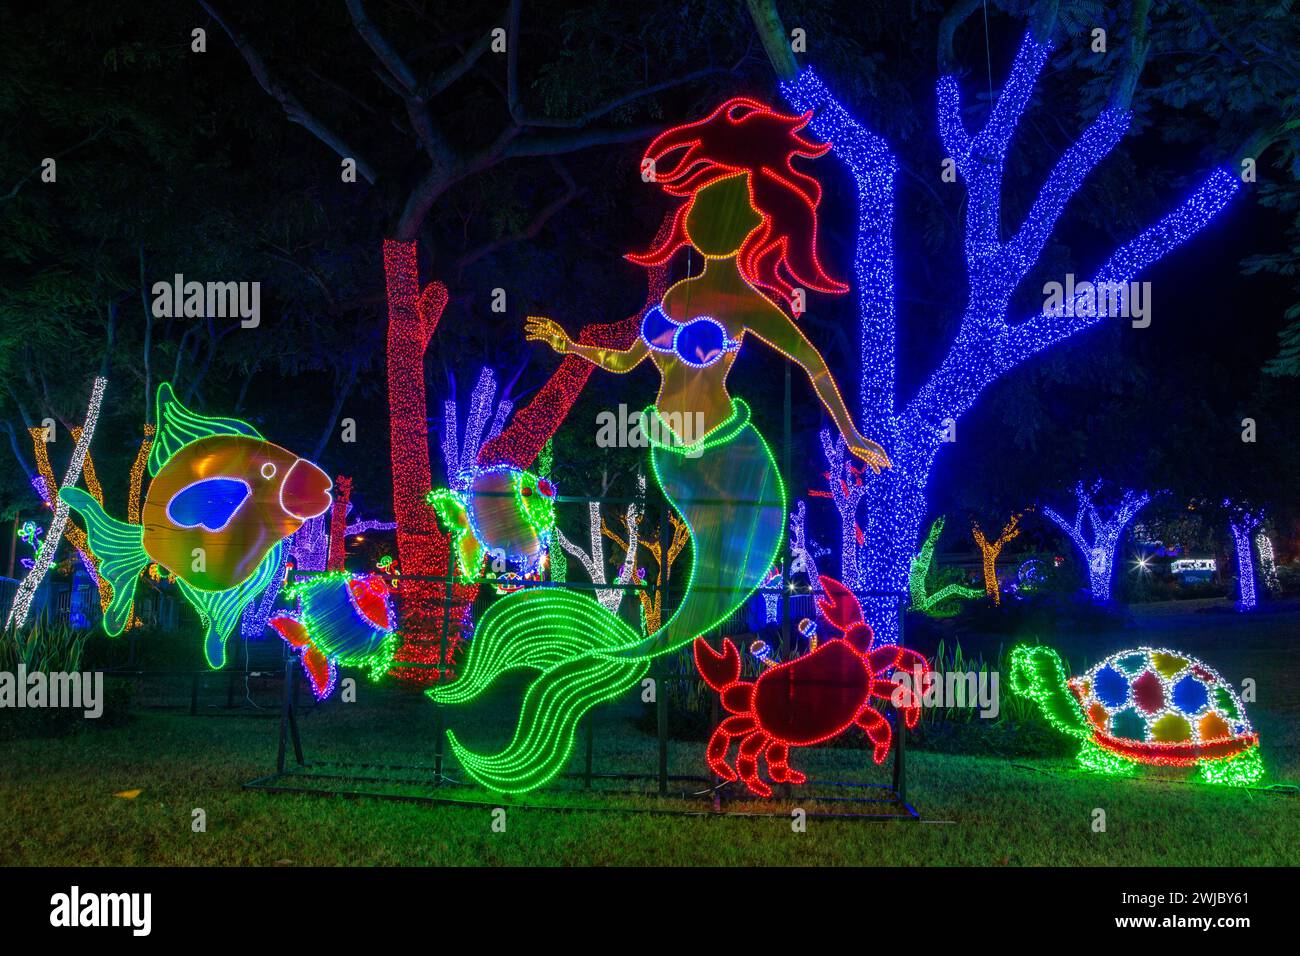 Milioni di luci natalizie decorano il parco ibero-americano di Santo Domingo, Repubblica Dominicana. Foto Stock